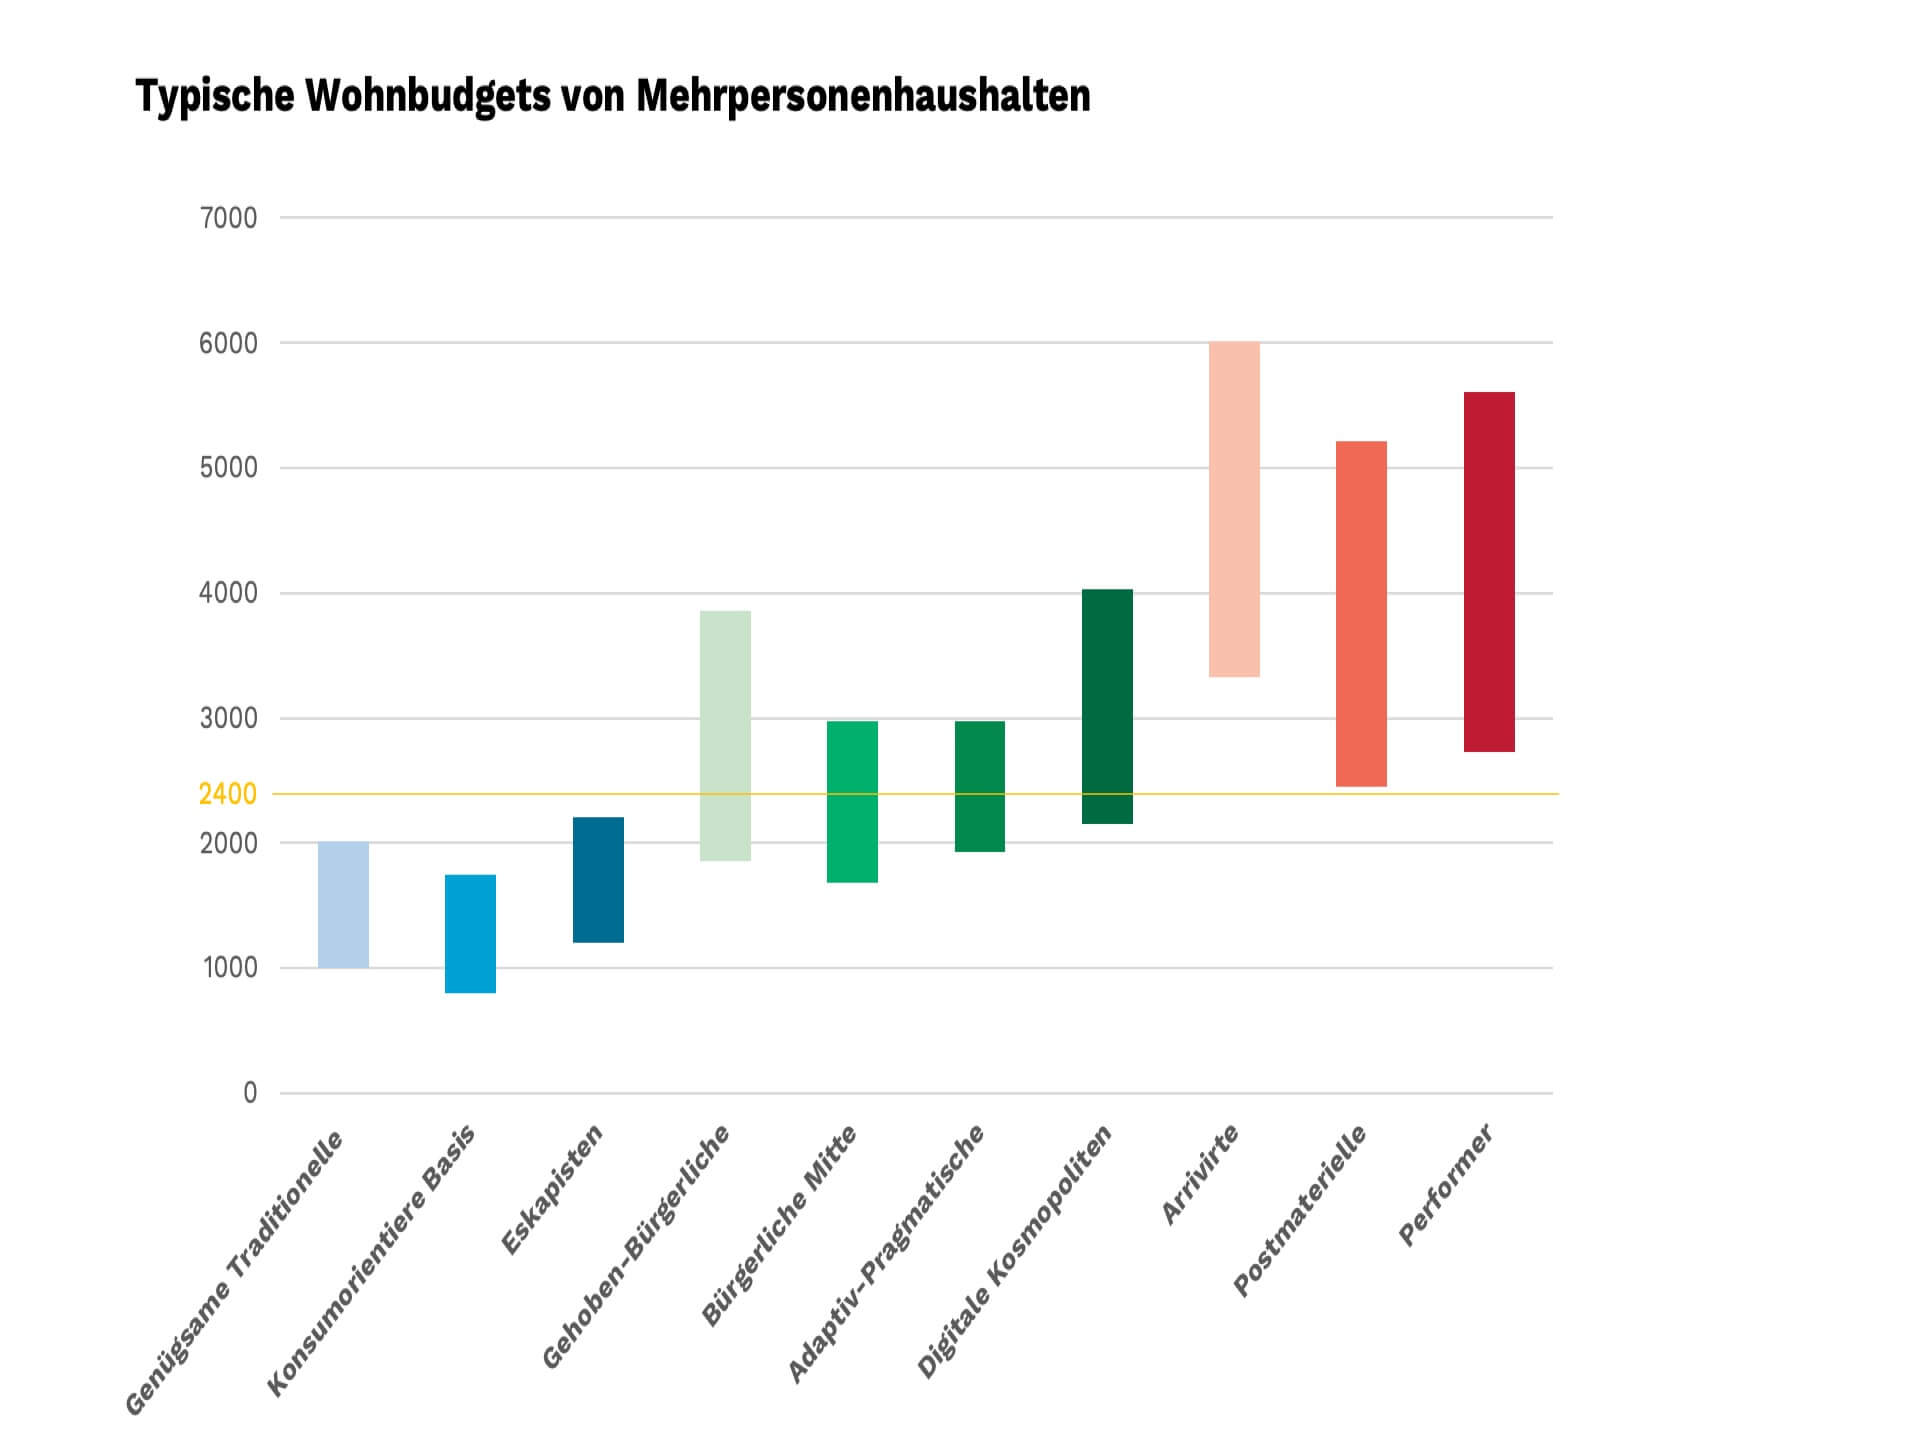 Abbildung 1: Typische Wohnbudgets von Paaren/Familien in CHF pro Monat Quelle: Sinus-Milieus Wohn- und Lebenswelten Schweiz